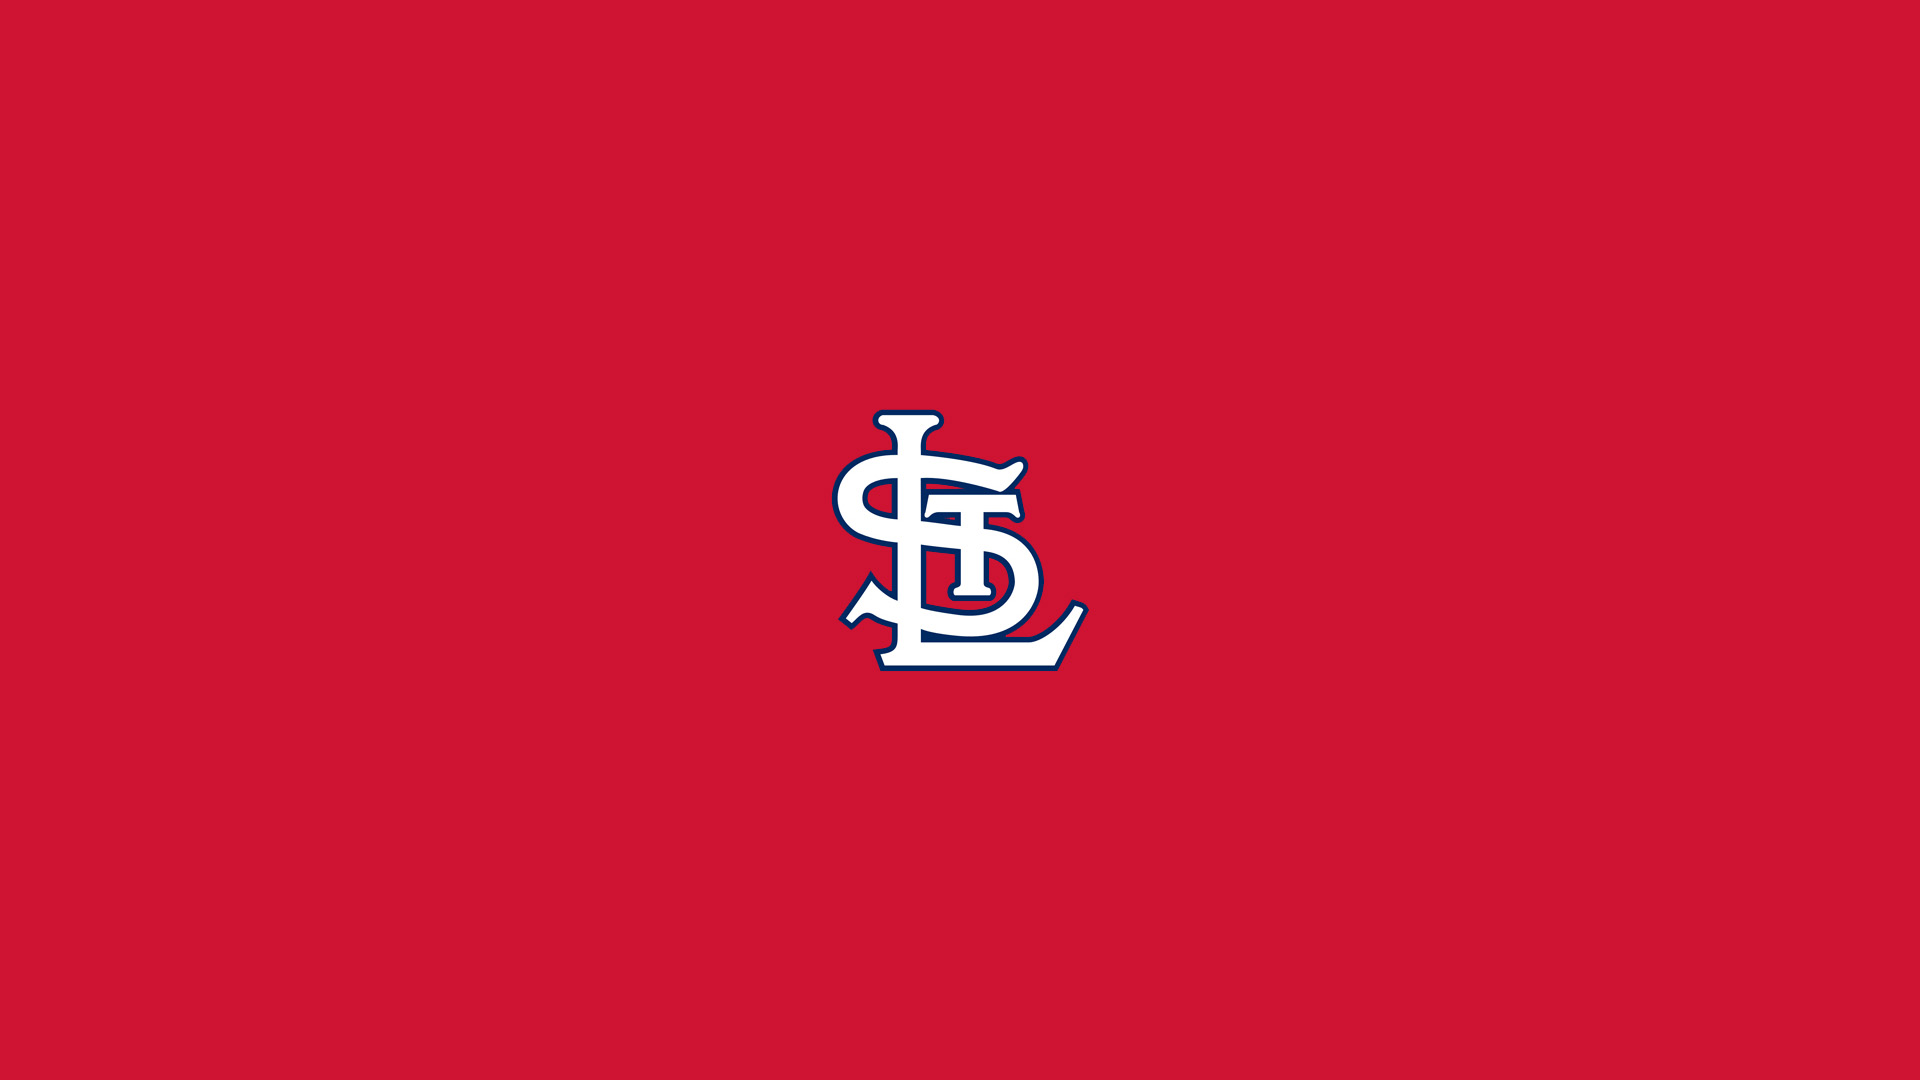 St Louis Cardinals Desktop Wallpaper